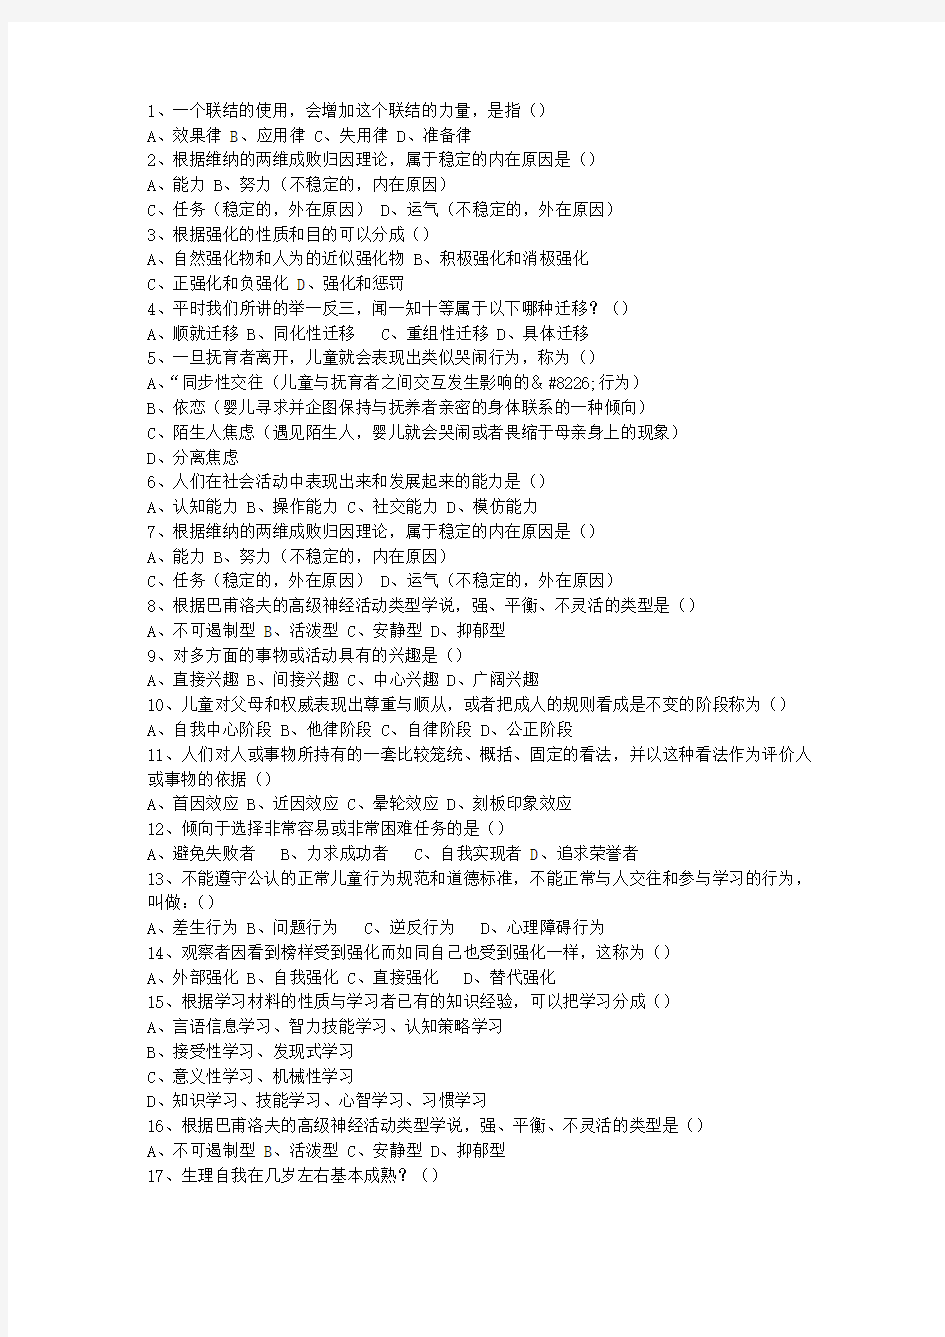 2015江西省教师资格证考试考试题库